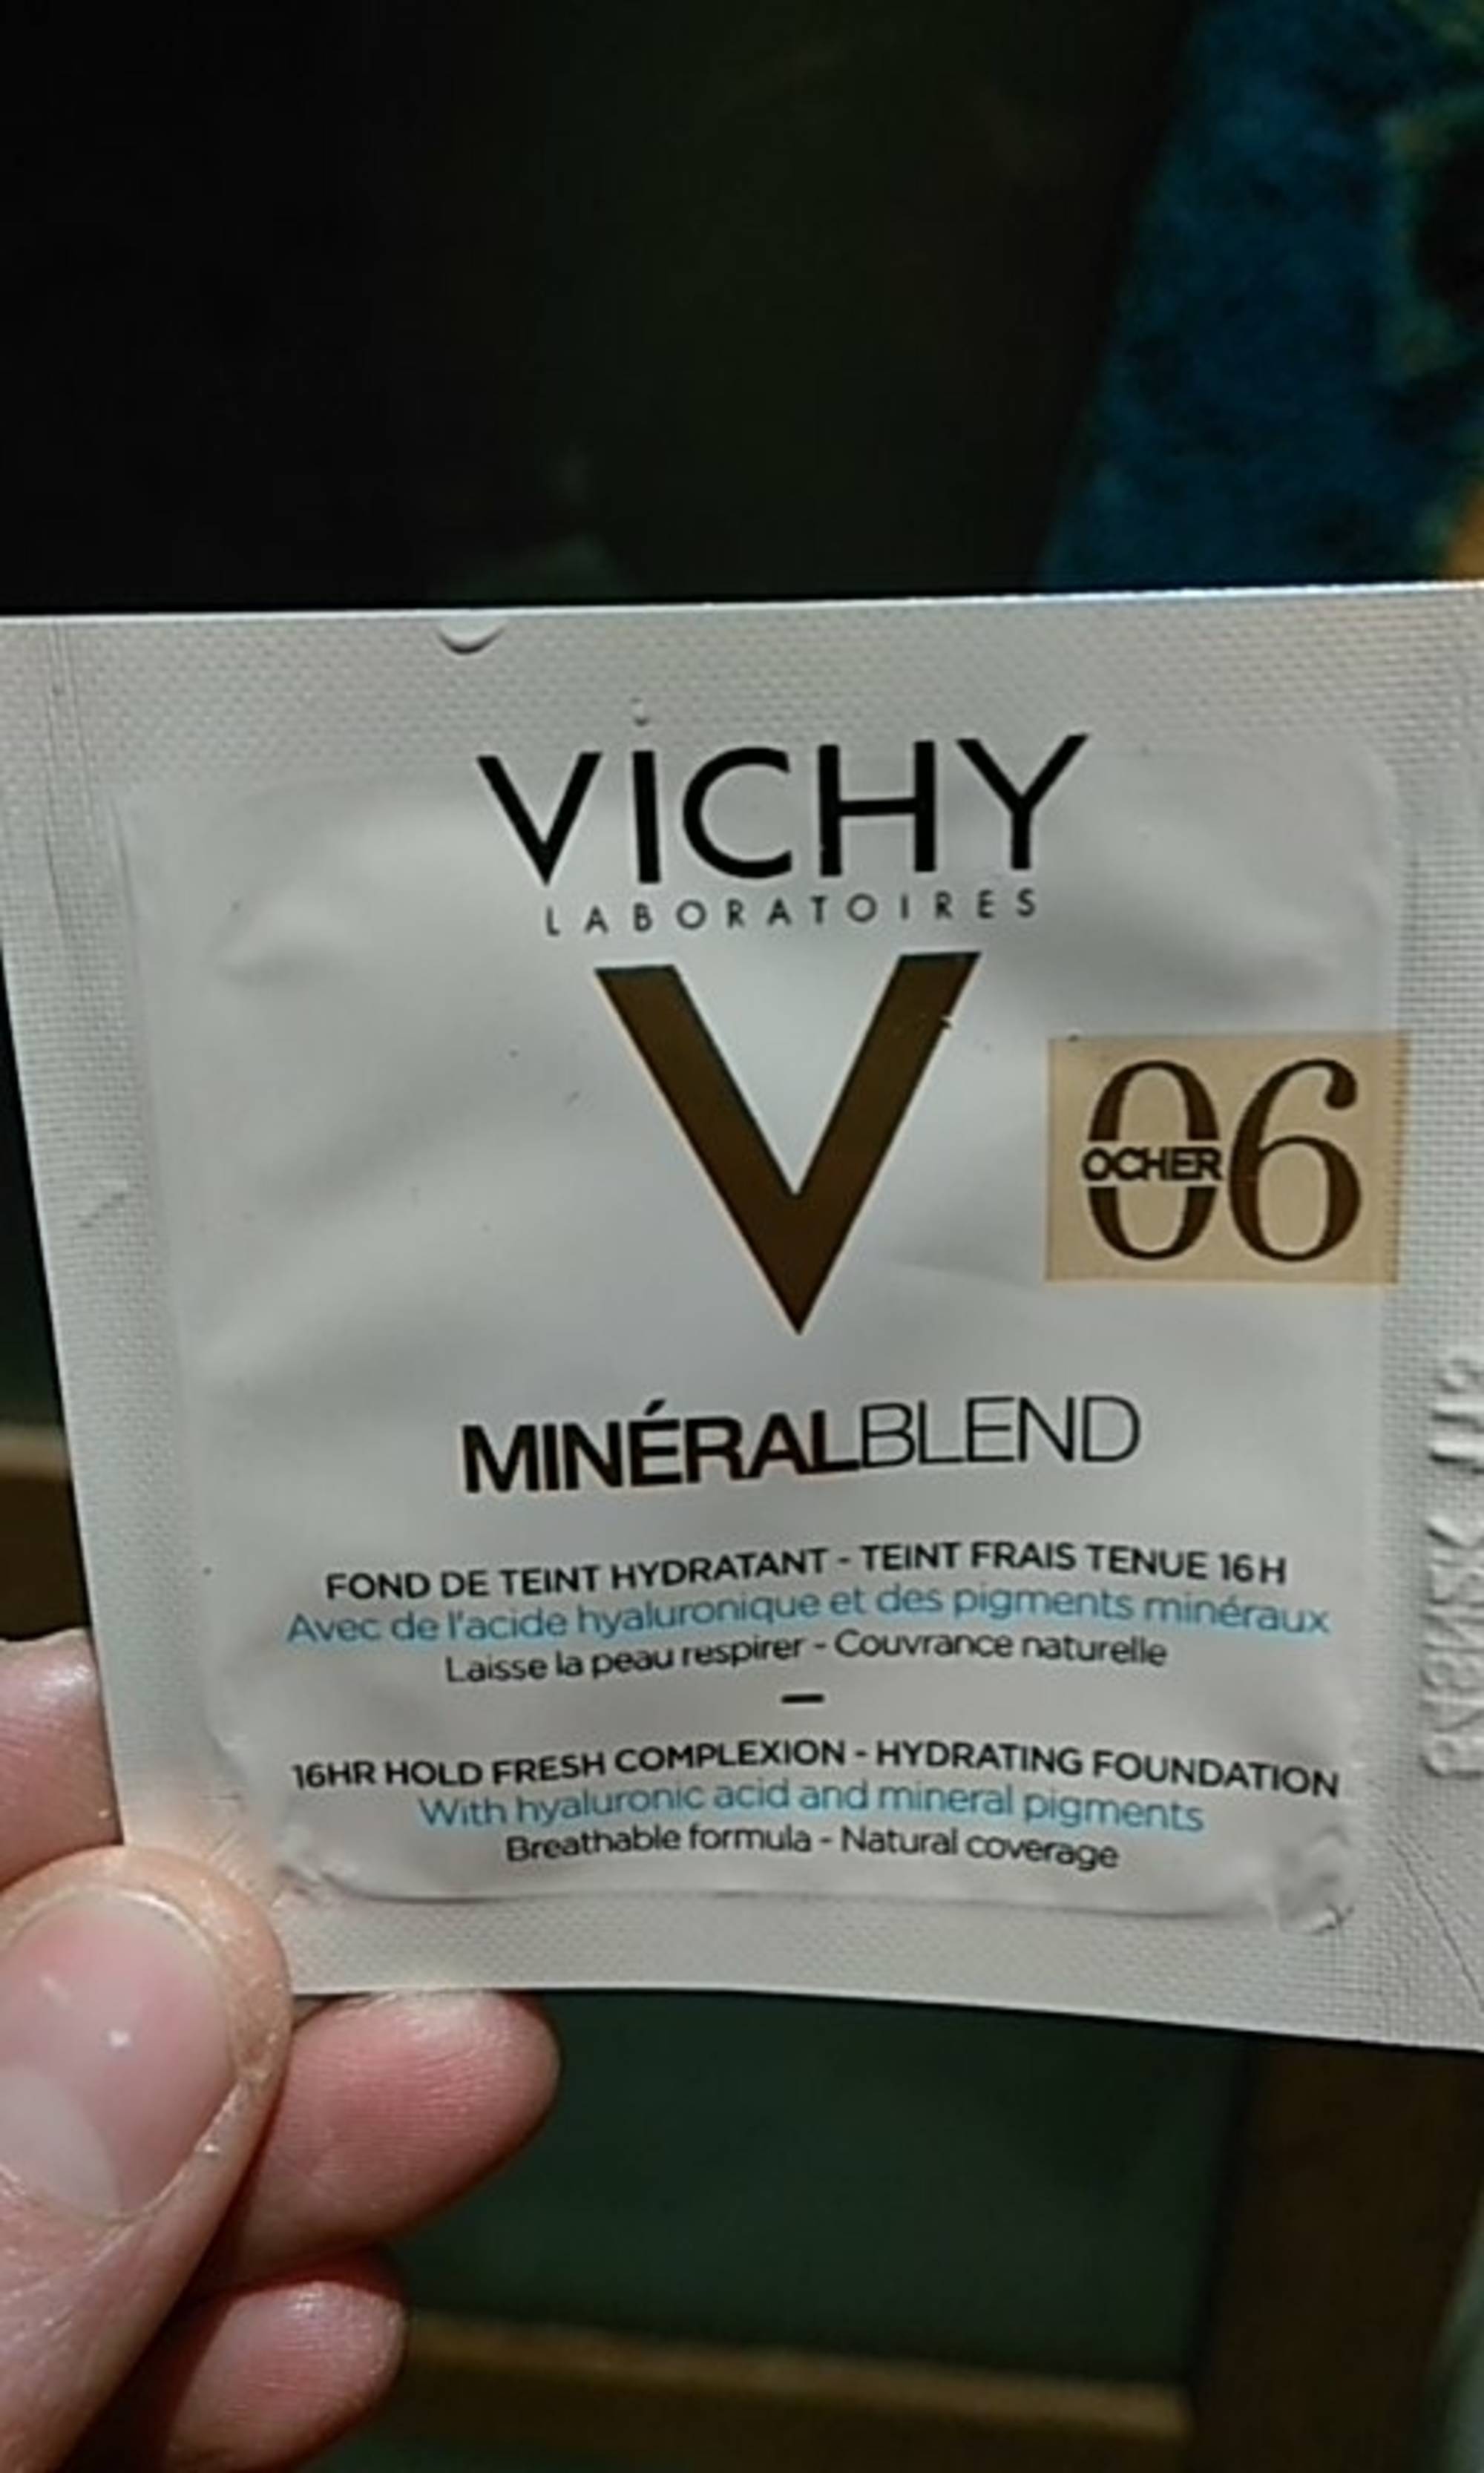 VICHY - Minéral blend - Fond de teint hydratant 06